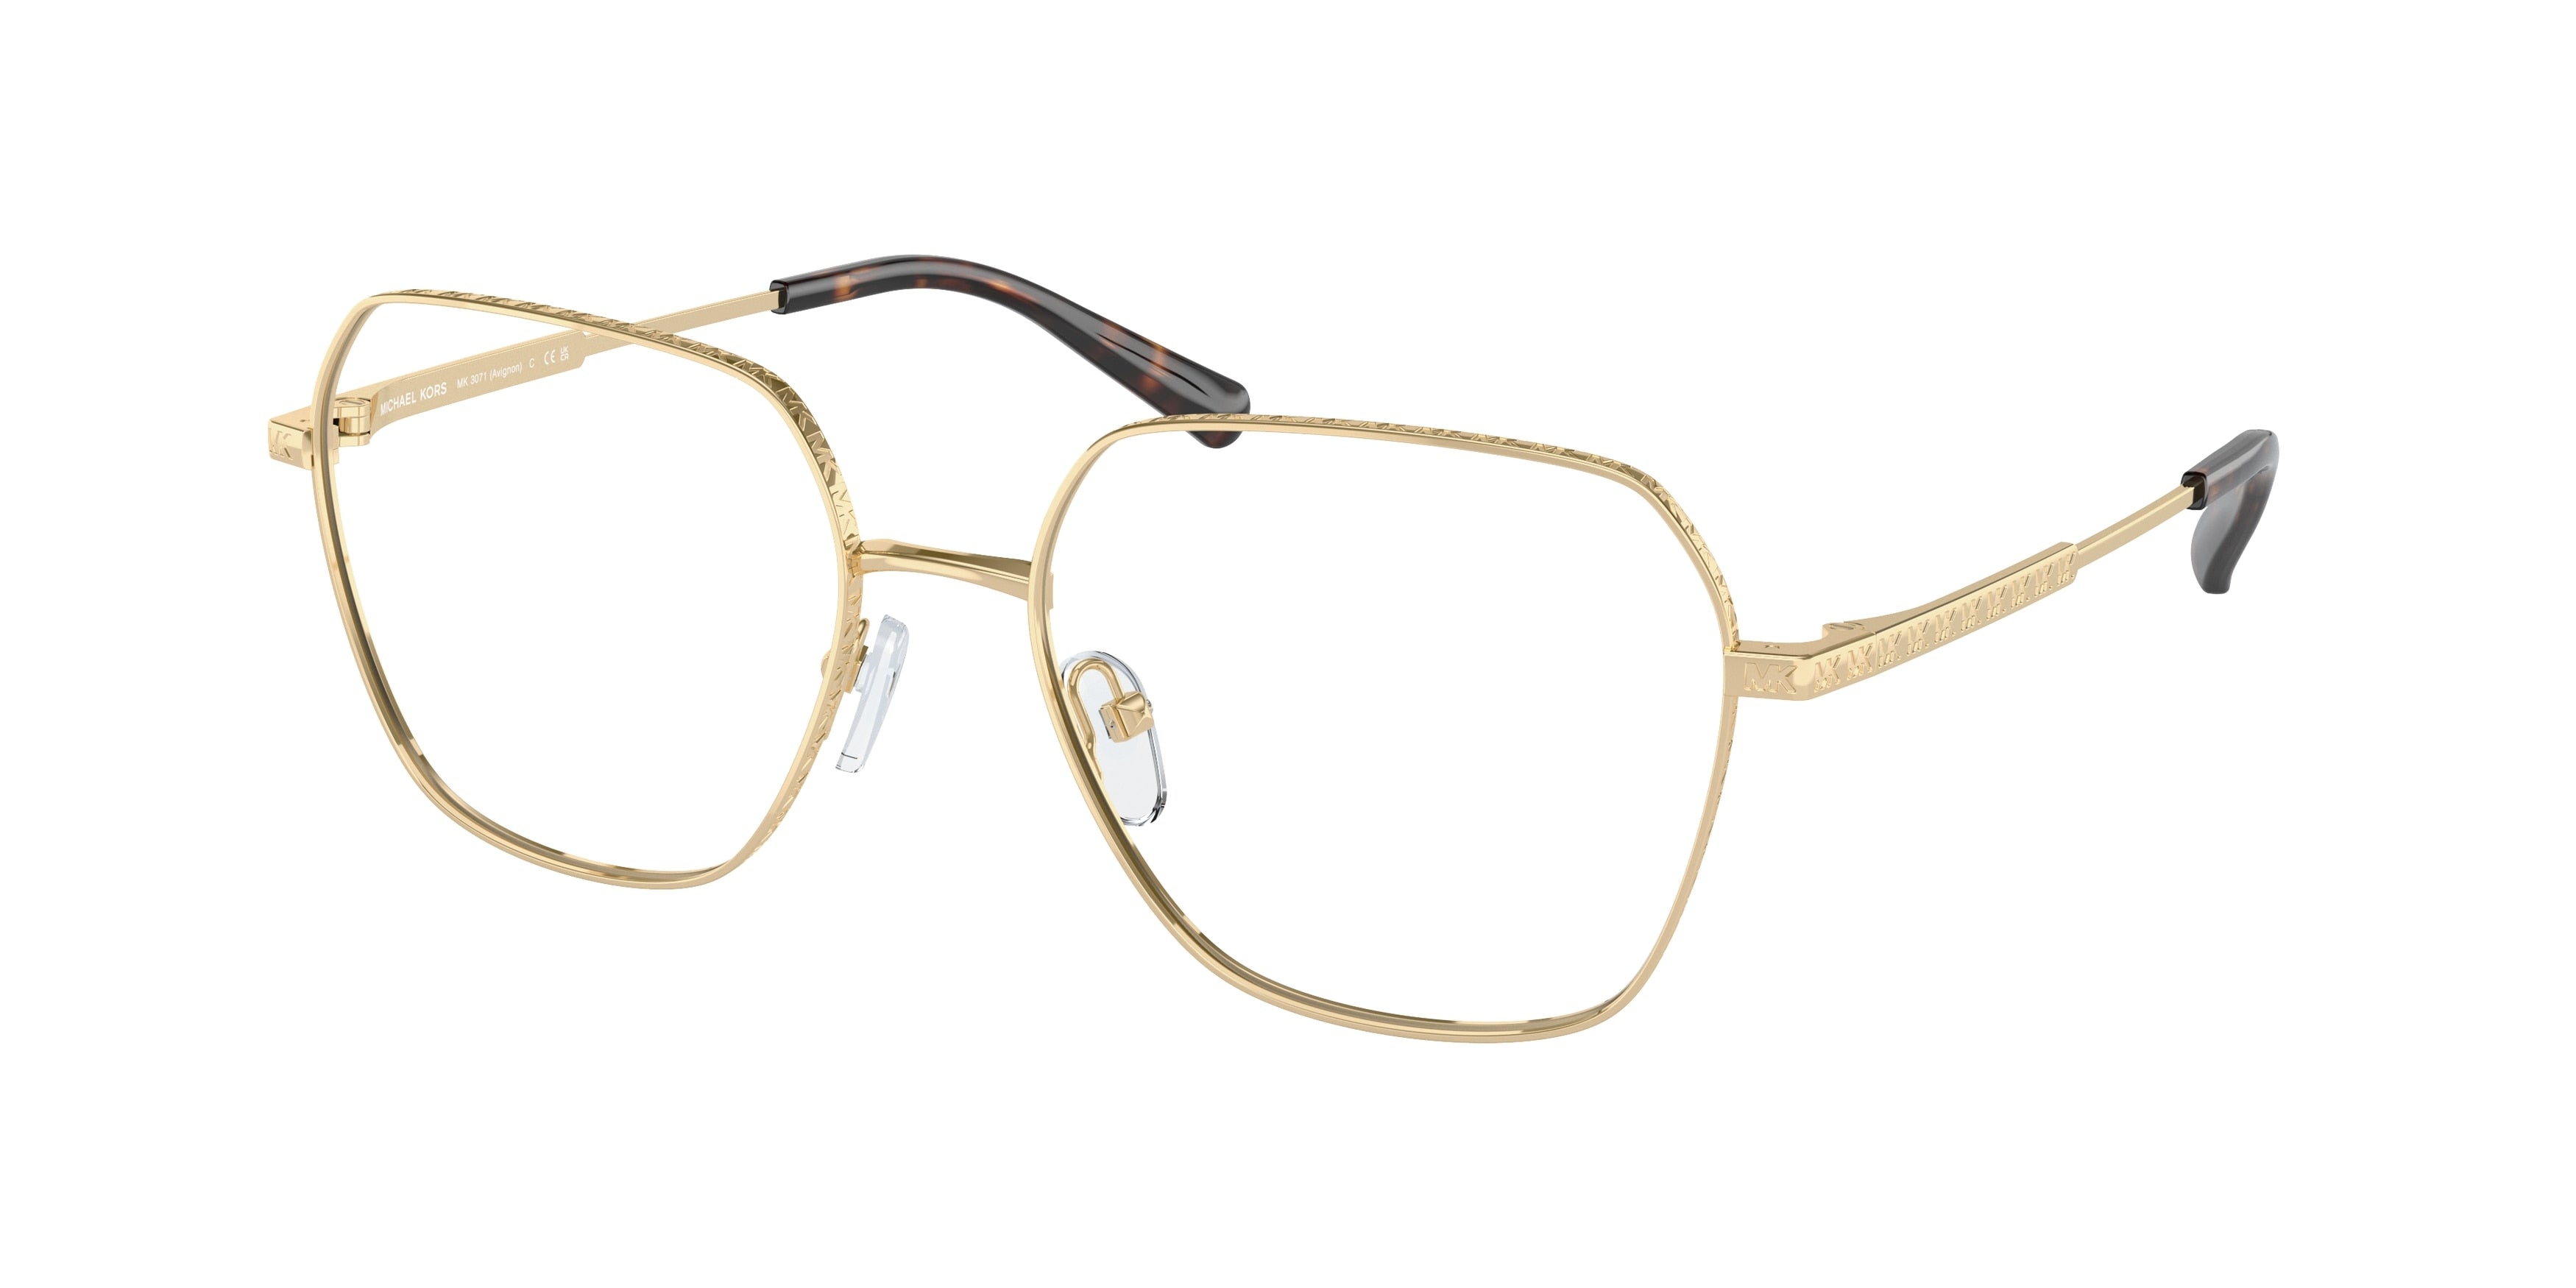 Michael Kors AVIGNON MK3071 Square Eyeglasses  1014-Light Gold 56-140-17 - Color Map Gold